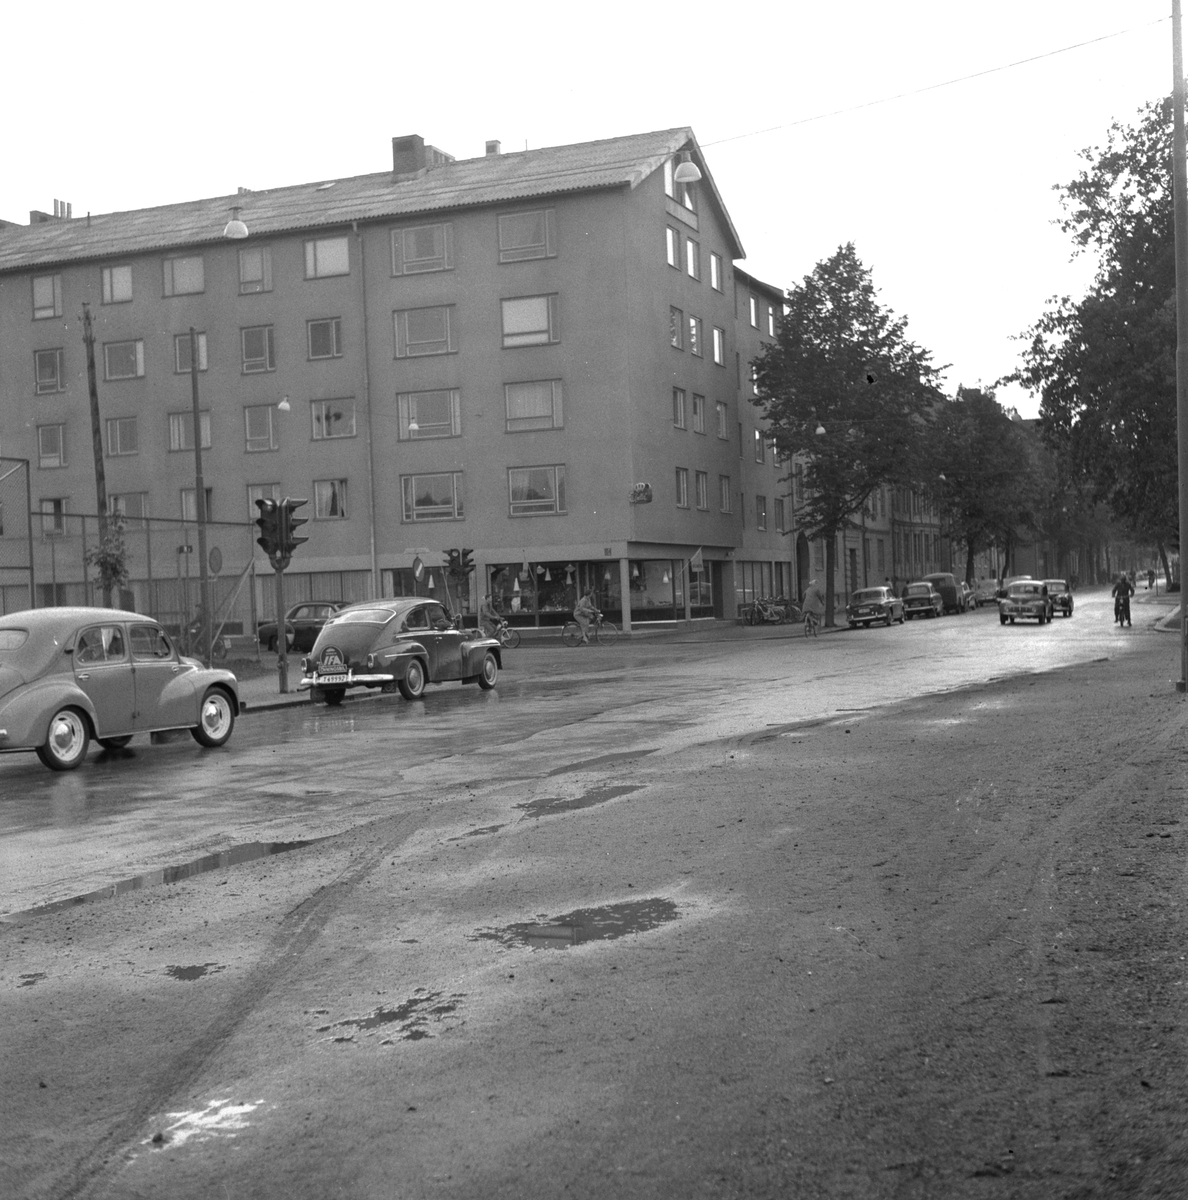 I den gatukorsningen stannade Olle Möller.
3 juli 1959. 
Gatukorsningen Järnvägsgatan och Alnängsgatan.